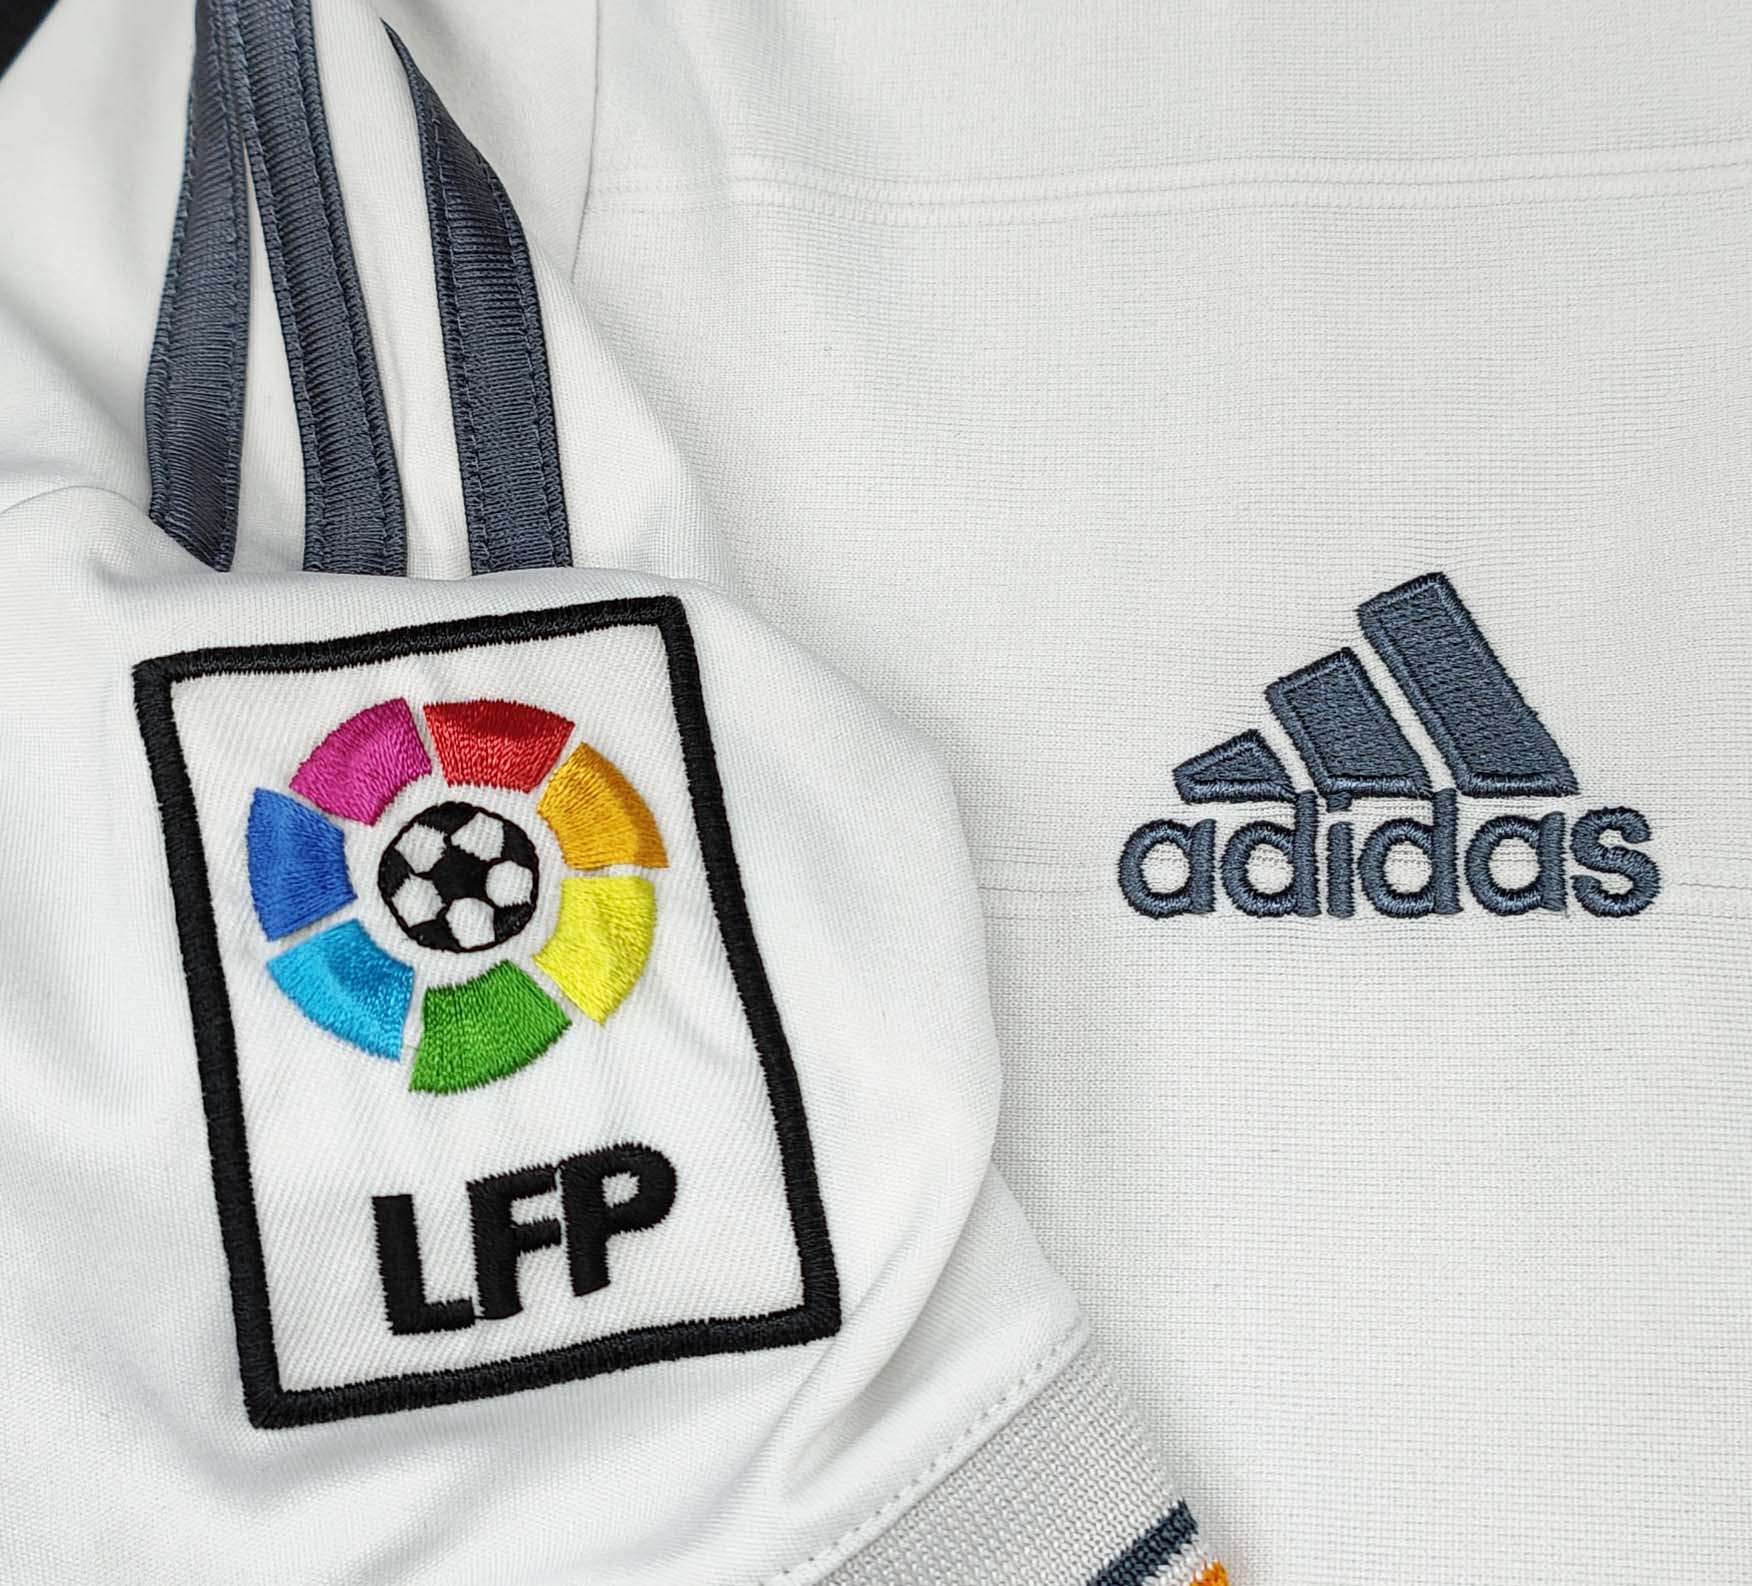 Maglia Ronaldo, l'Adidas sta già stampando la casacca con il numero 7